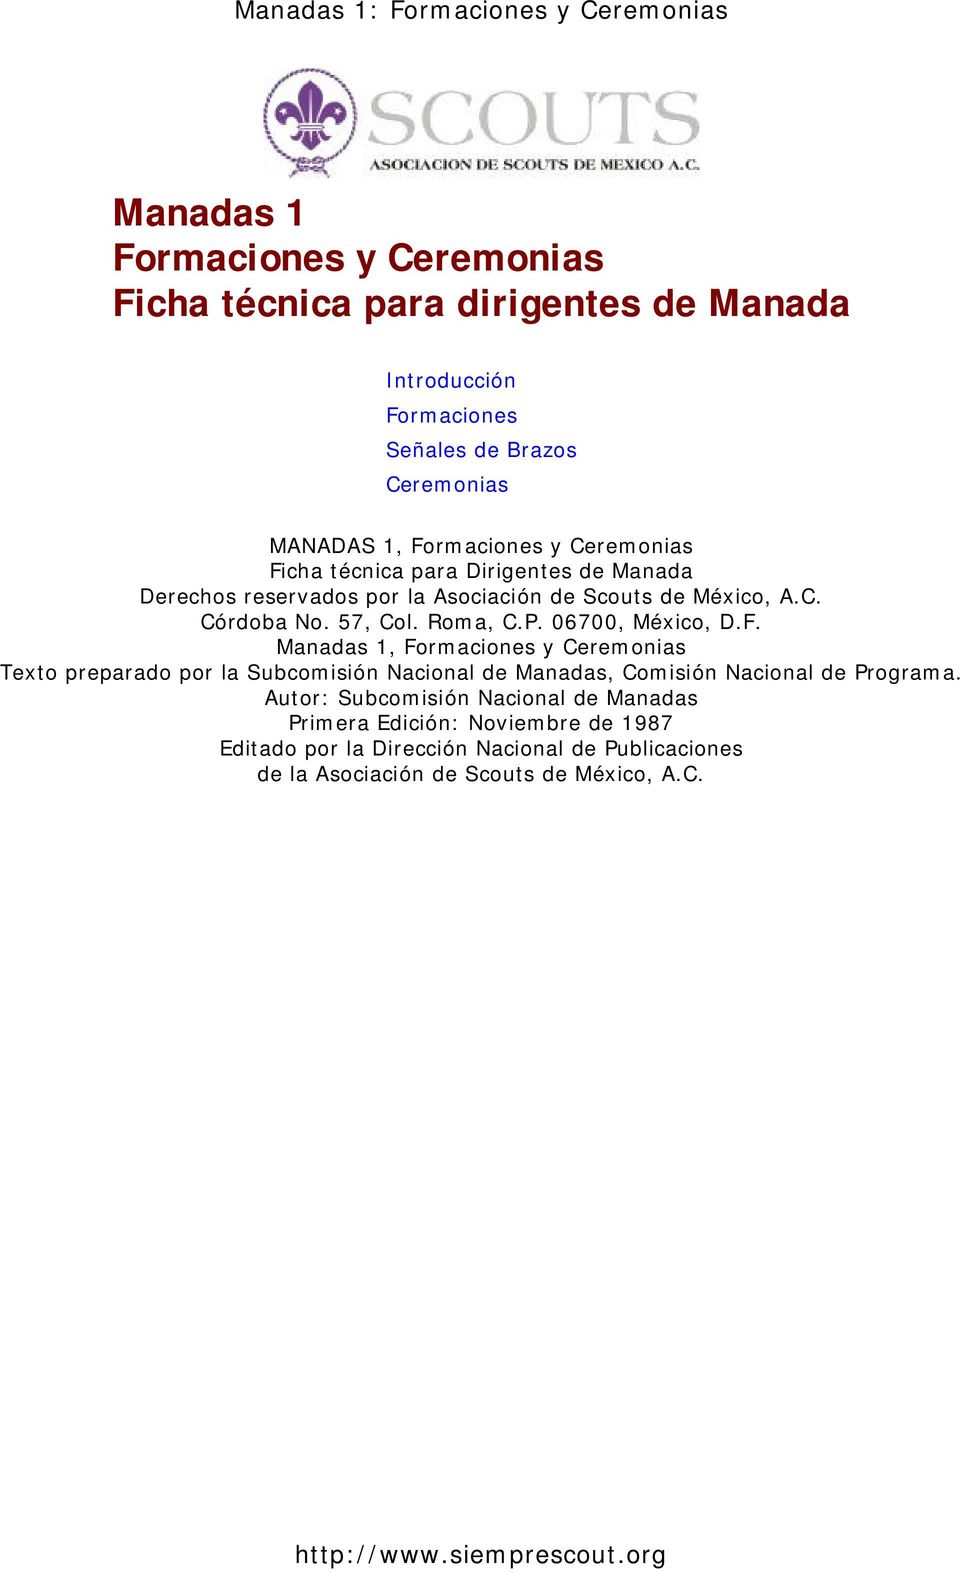 06700, México, D.F. Manadas 1, Formaciones y Ceremonias Texto preparado por la Subcomisión Nacional de Manadas, Comisión Nacional de Programa.